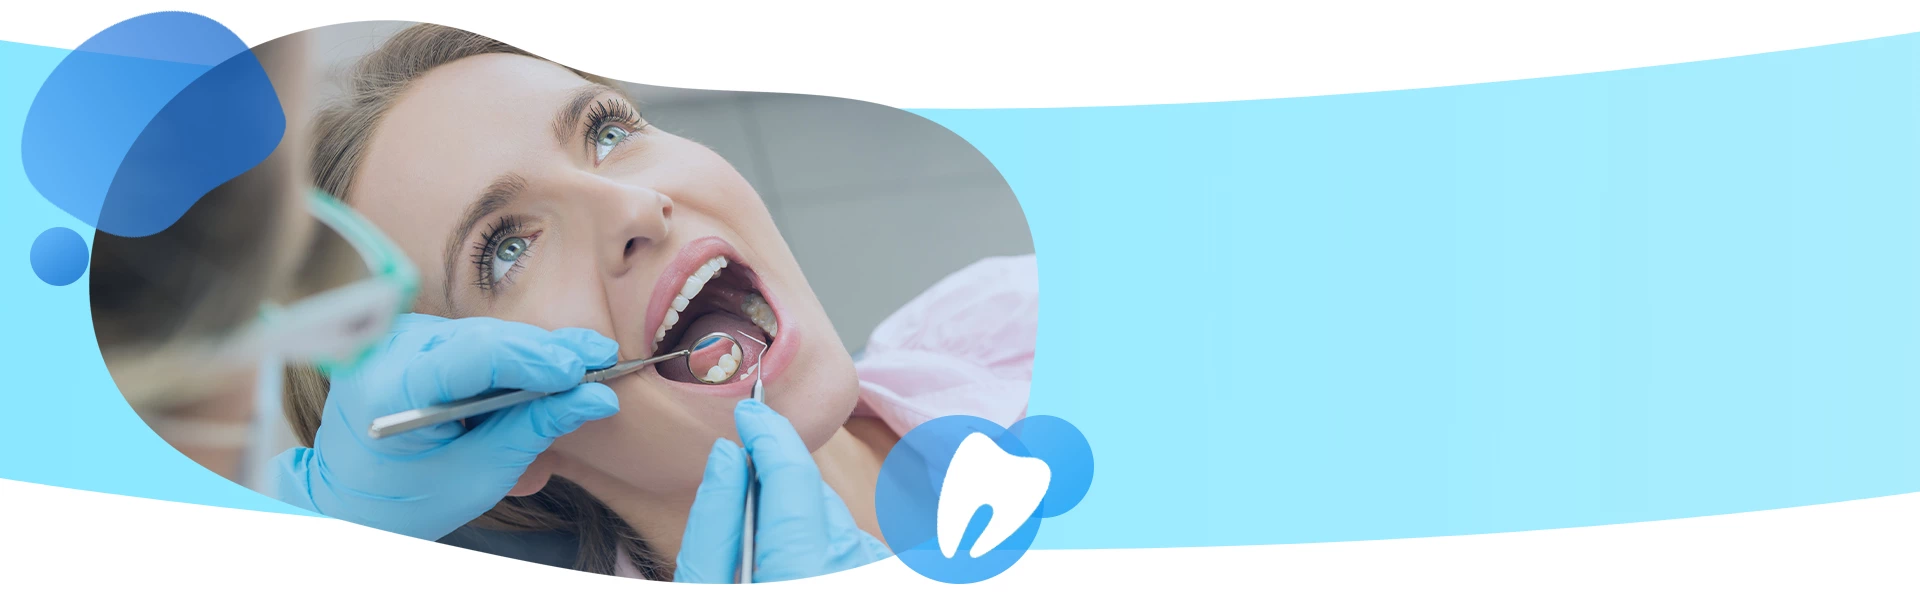 przegląd zębów u stomatologa